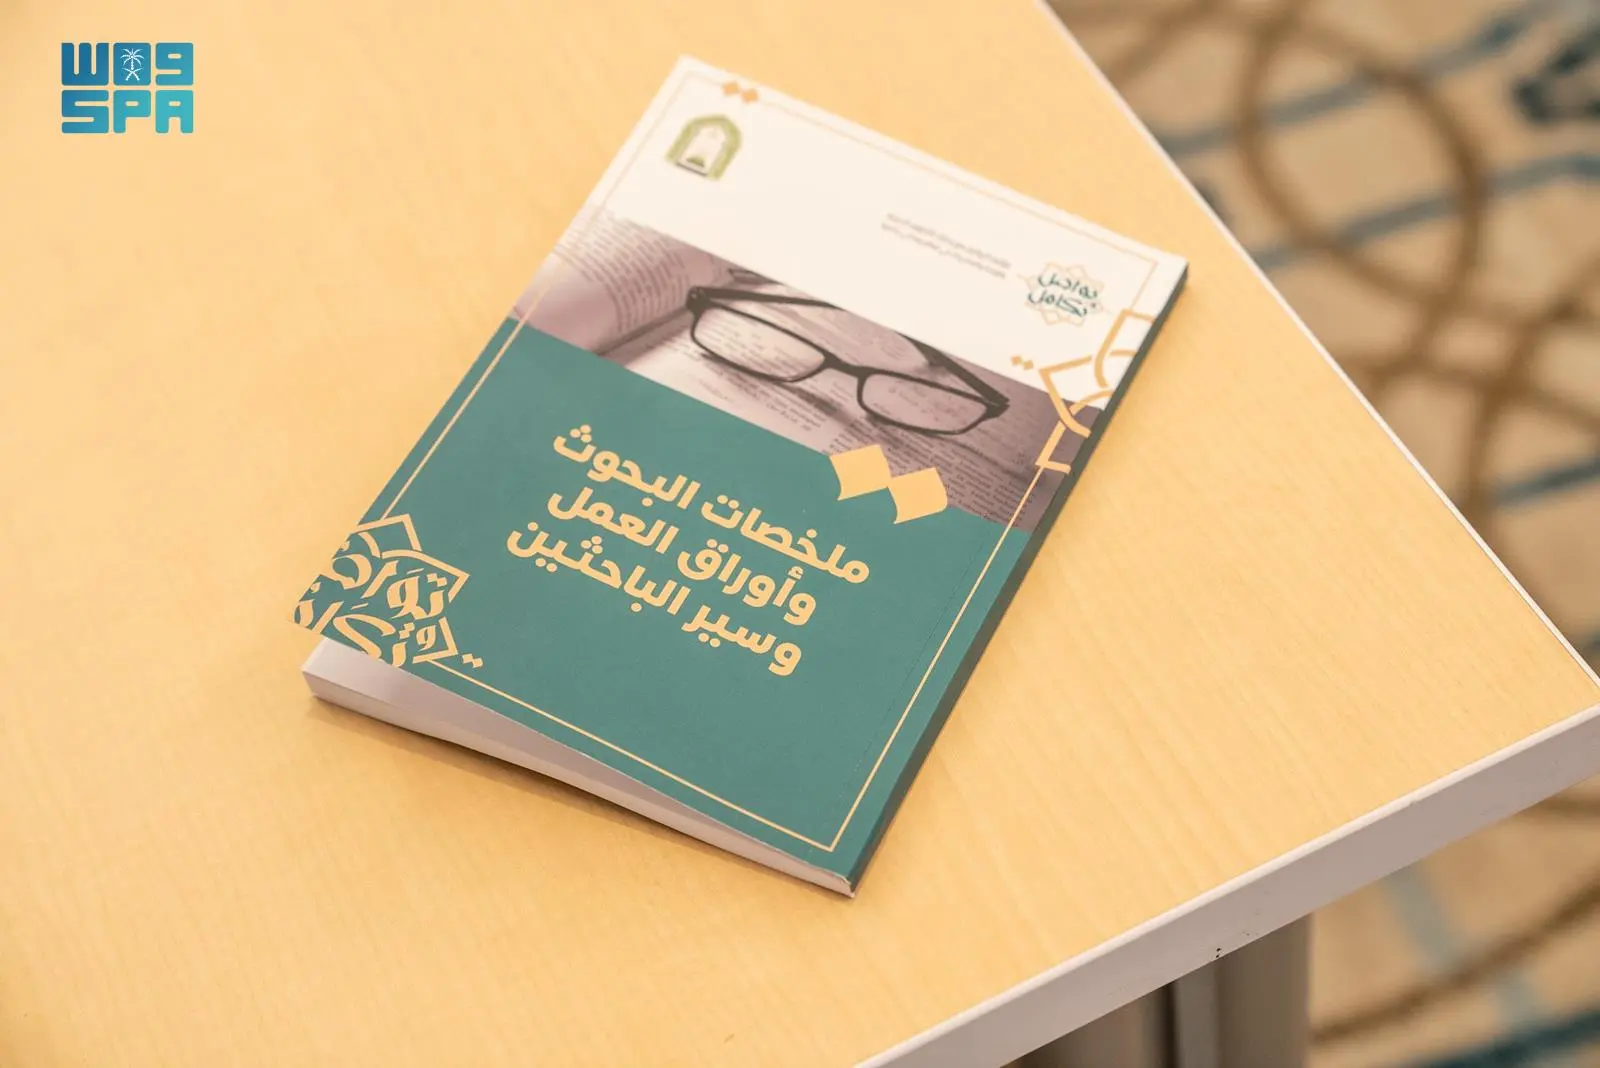 وزارة الشؤون الإسلامية تصدر كتابًا عن مؤتمر تواصل وتكامل لنشر ملخصات البحوث وأوراق العمل وسير الباحثين